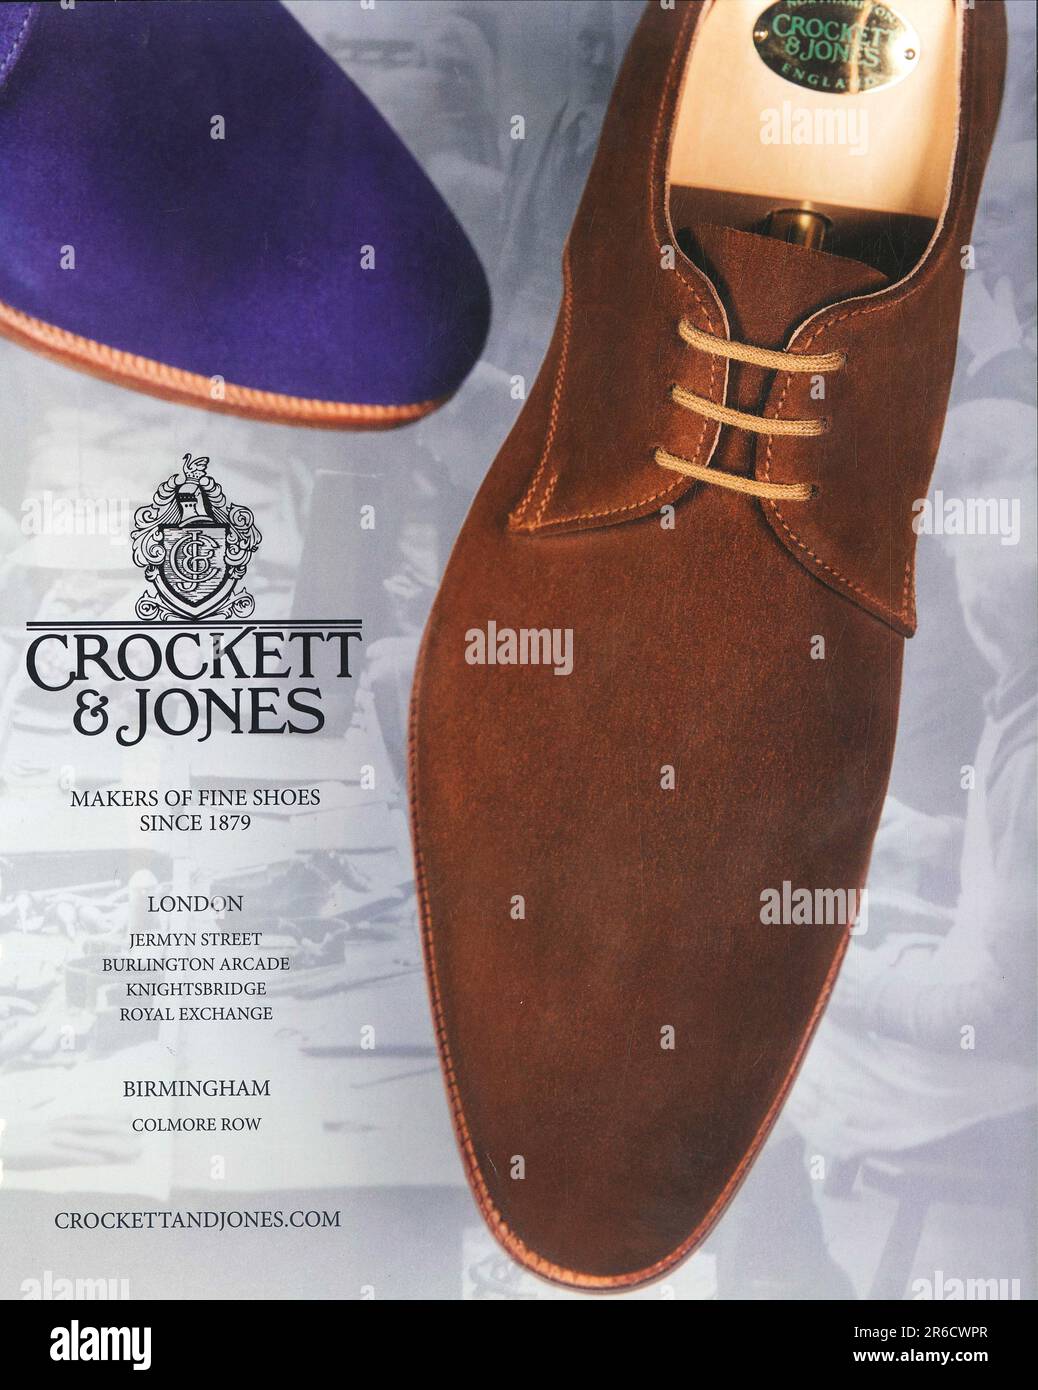 Crockett & Jones, creatori delle migliori scarpe e calzature fatte a mano da uomo e da donna inglesi, pubblicano in una rivista 2014 Foto Stock